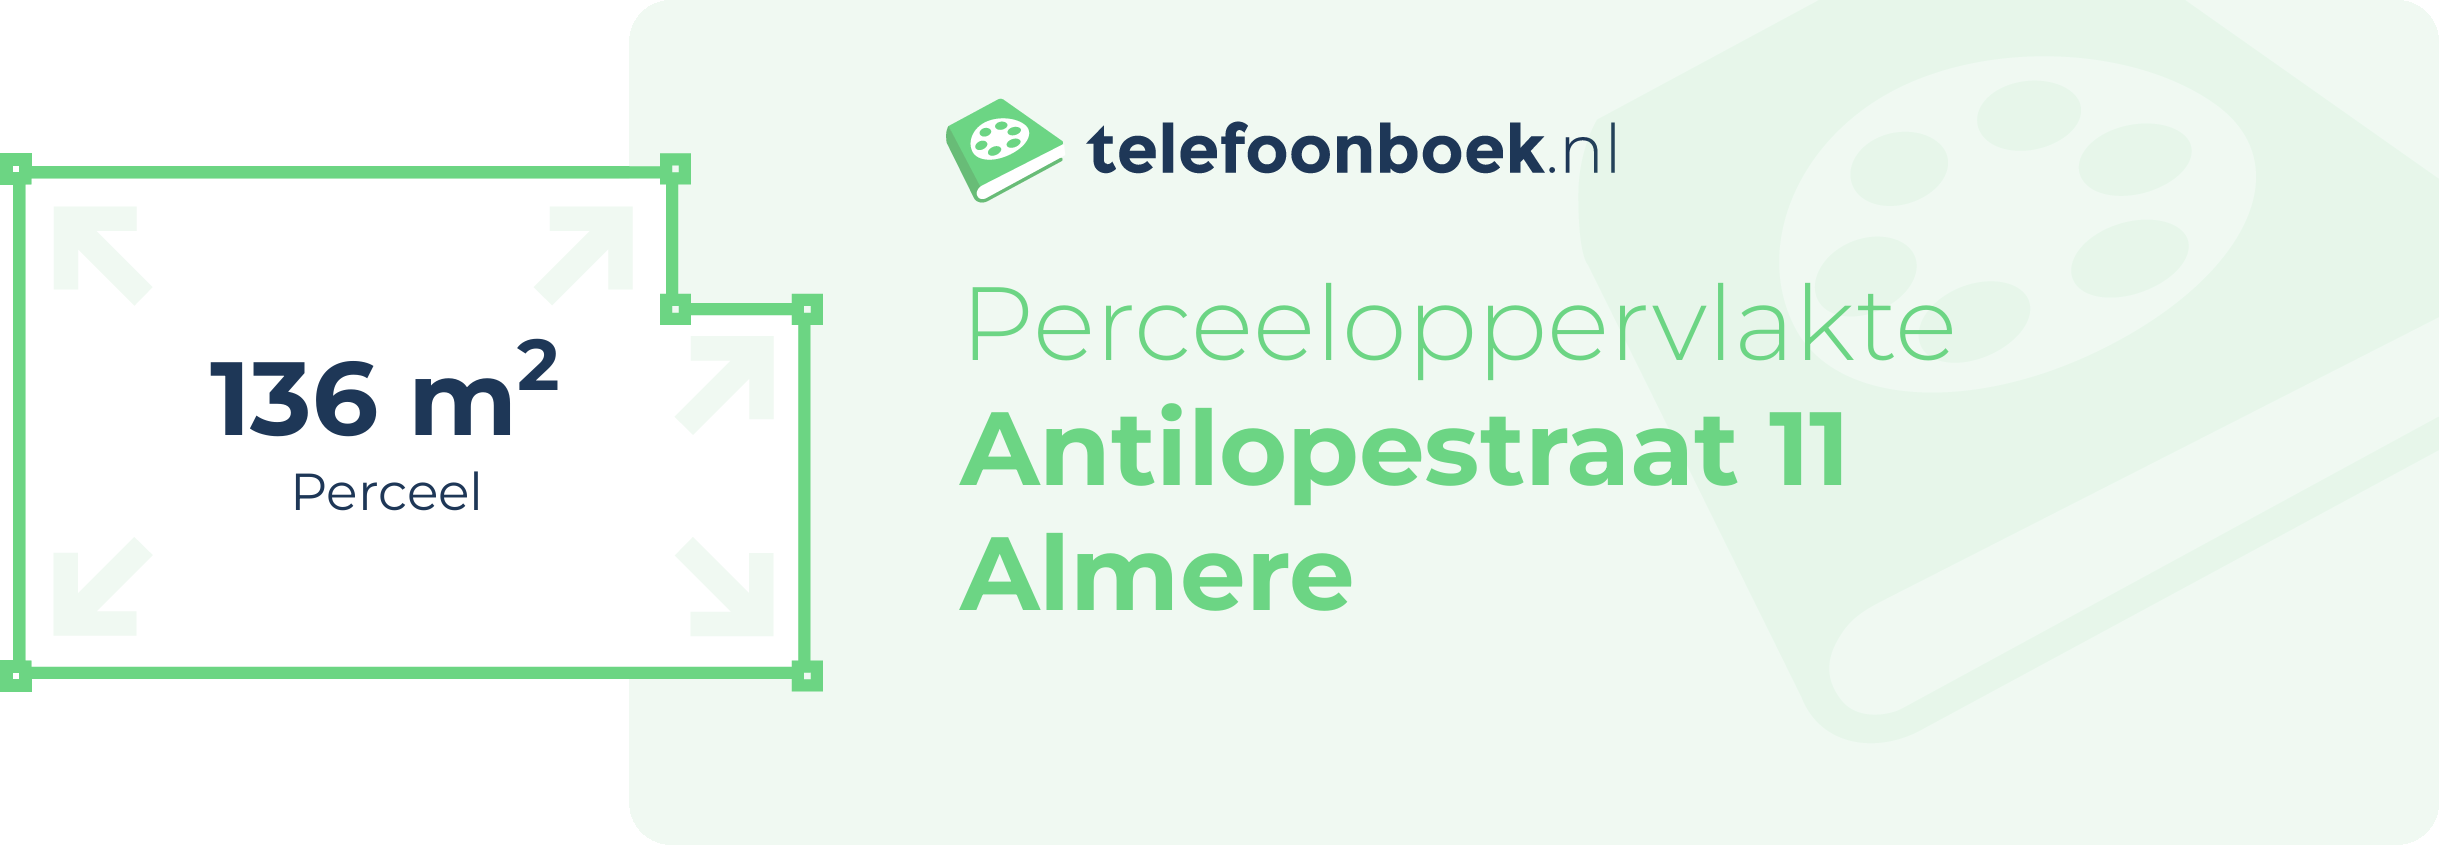 Perceeloppervlakte Antilopestraat 11 Almere